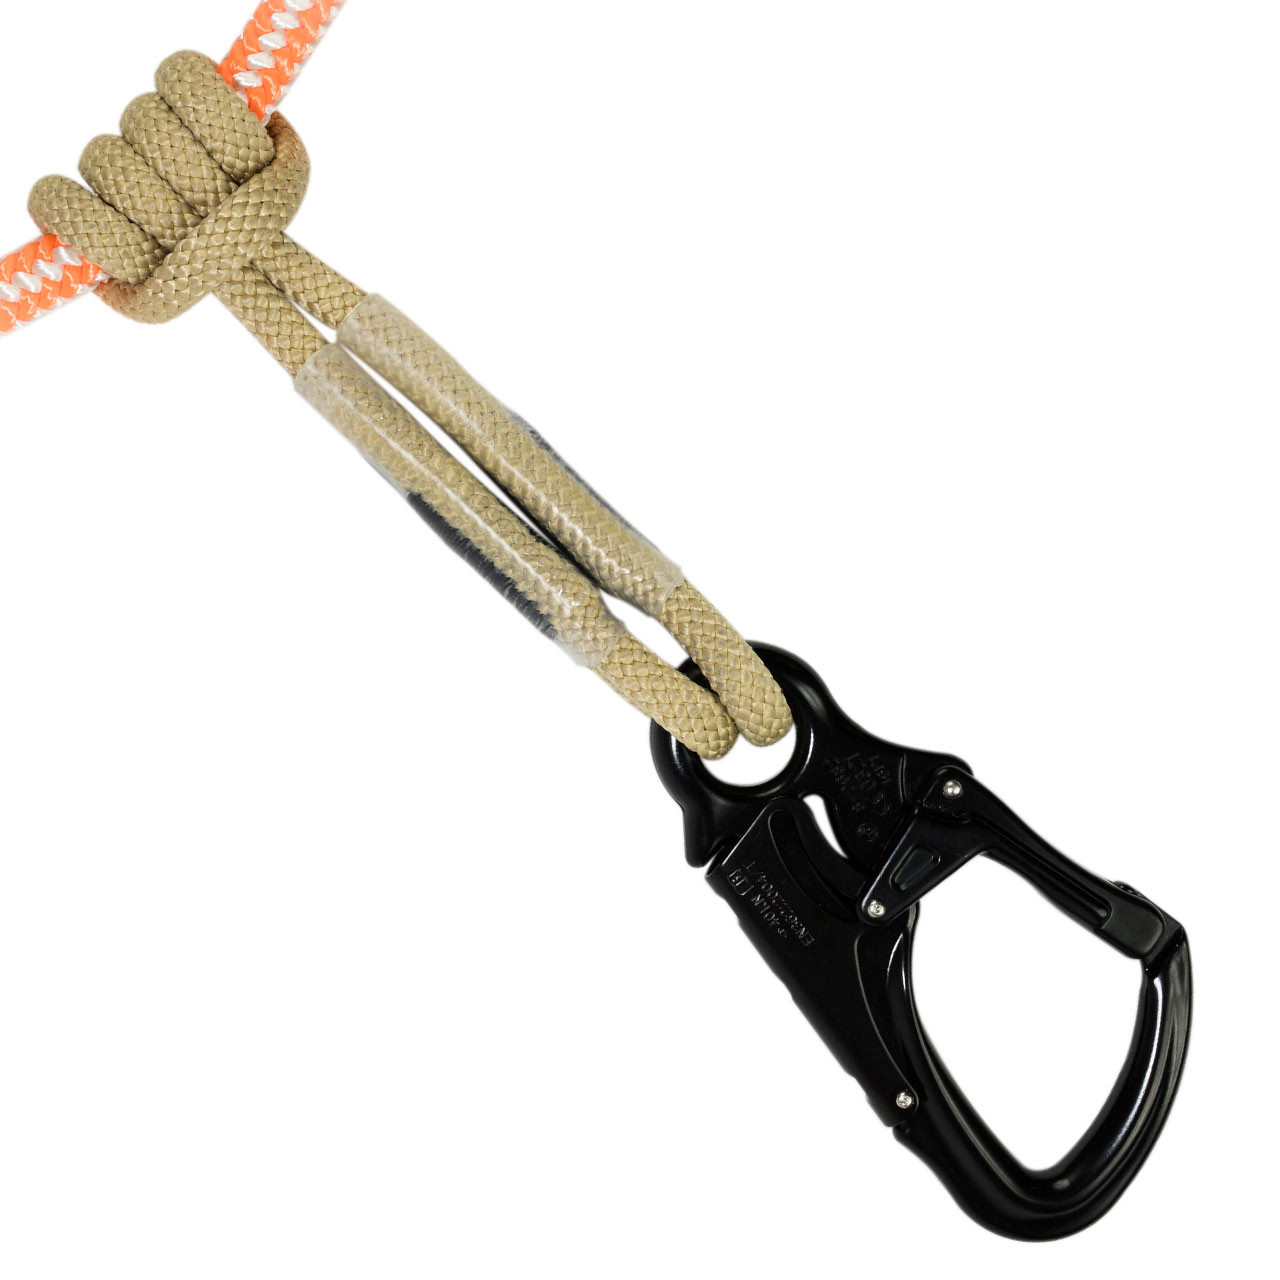 Adjustable Loop Sling by Pelican Rope - Assemblies & Lanyards